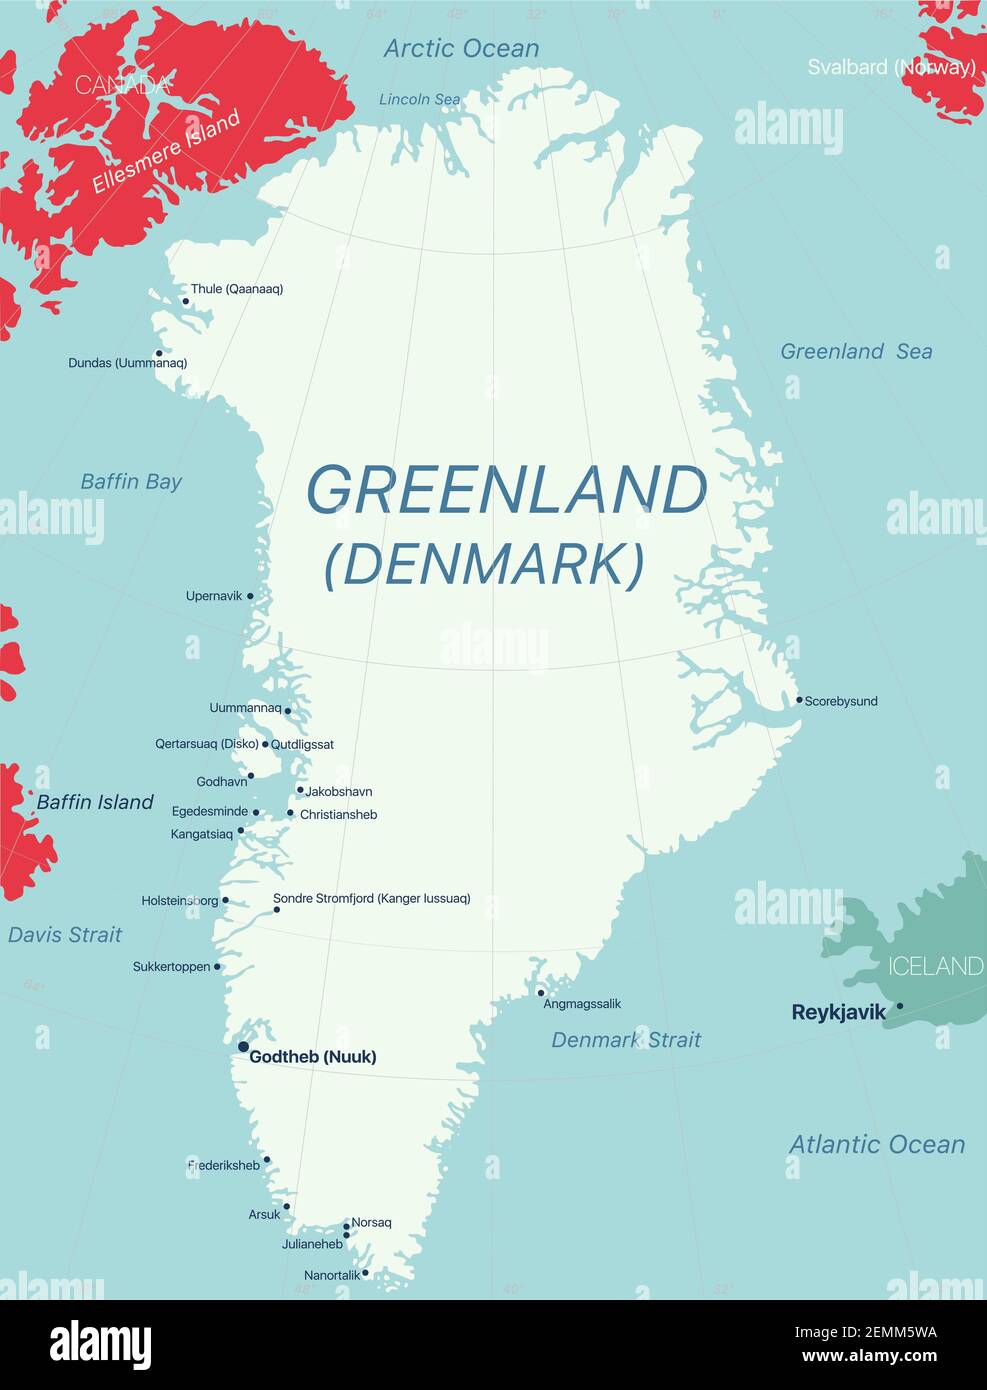 Grönland Insel Detaillierte editierbare Karte mit Regionen Städte und Städte, geografische Standorte. Vector EPS-10-Datei Stock Vektor